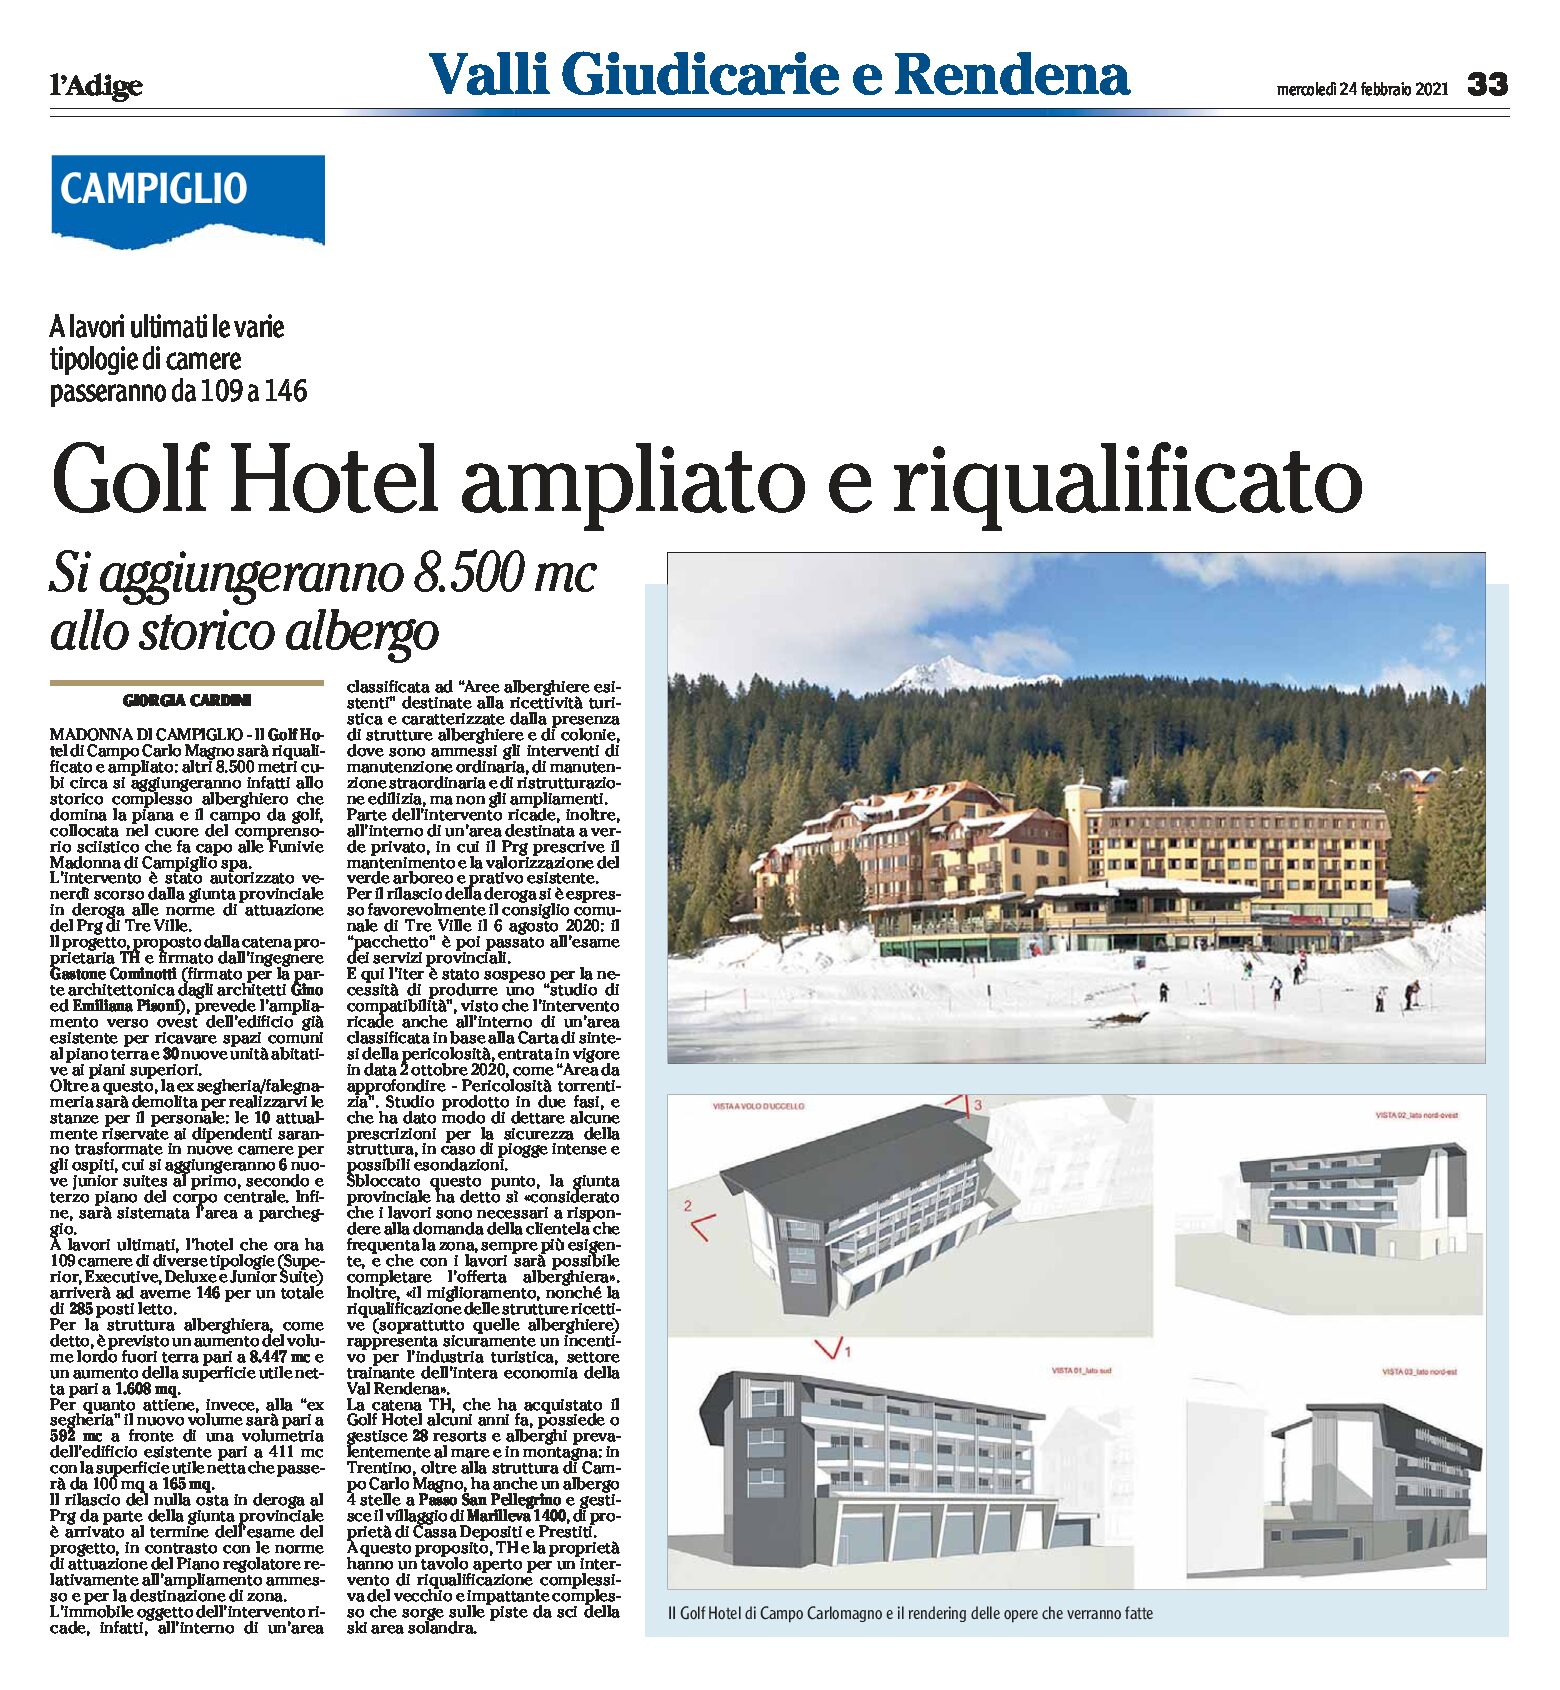 Campiglio, Campo Carlo Magno: il Golf Hotel sarà ampliato e riqualificato